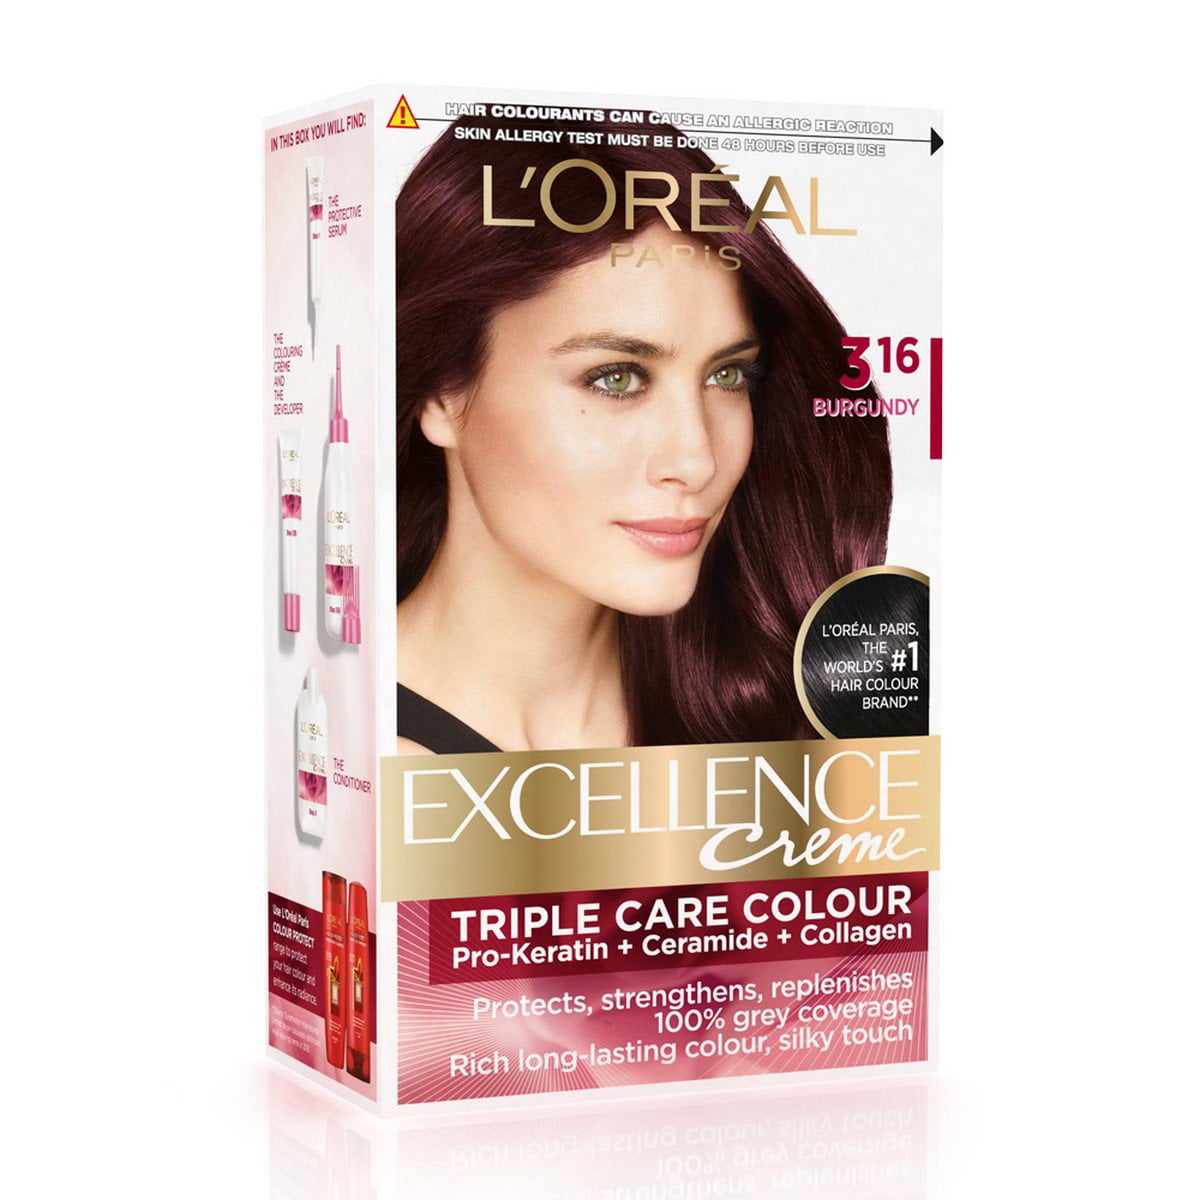  L Oreal  Paris Excellence Creme Hair  Color  3 16 Burgundy  